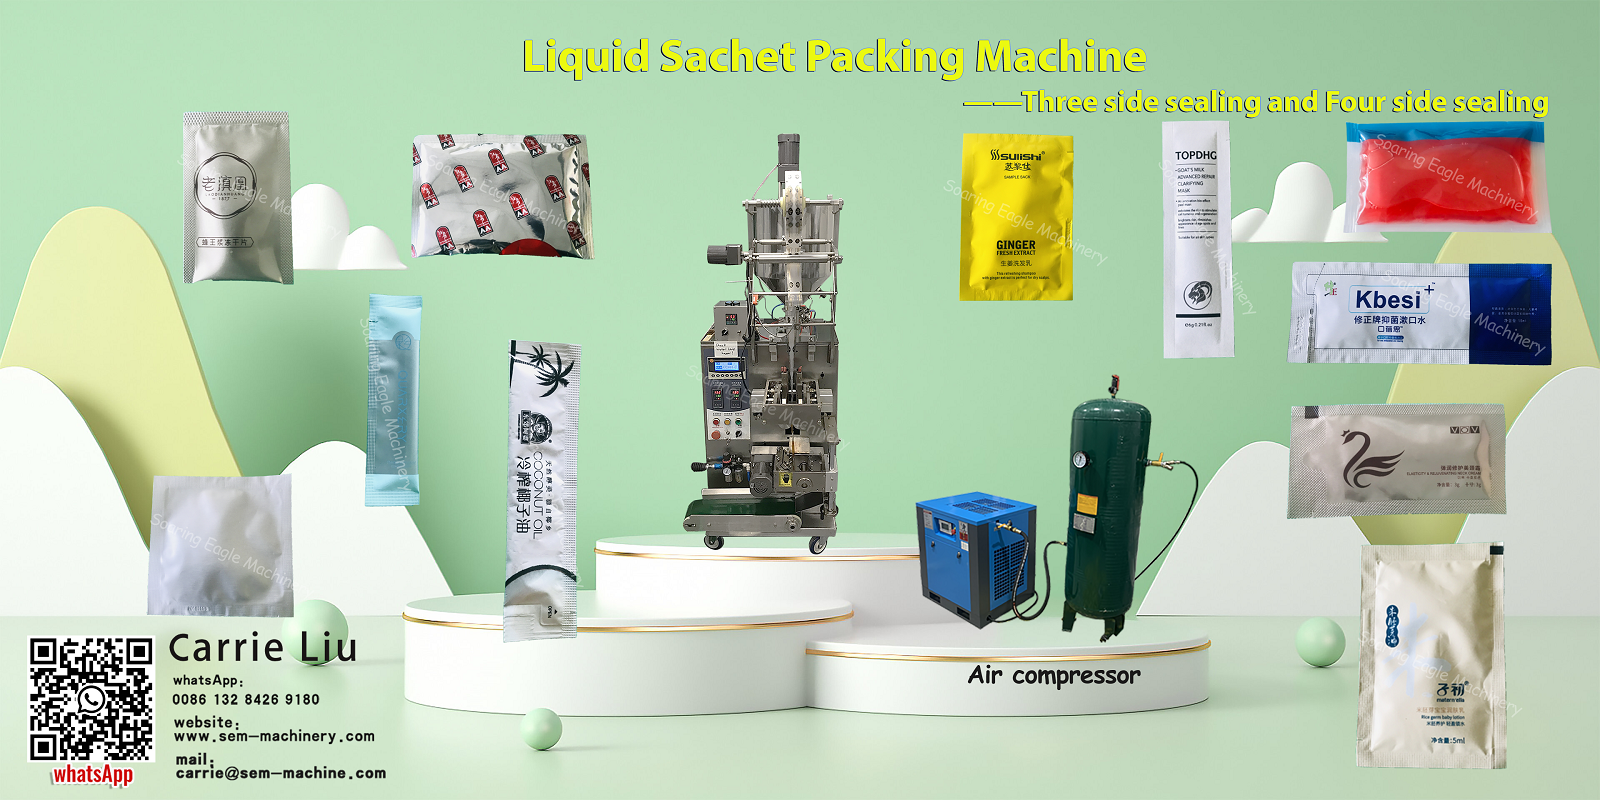 liquid-sachet-packing-machine-2.png